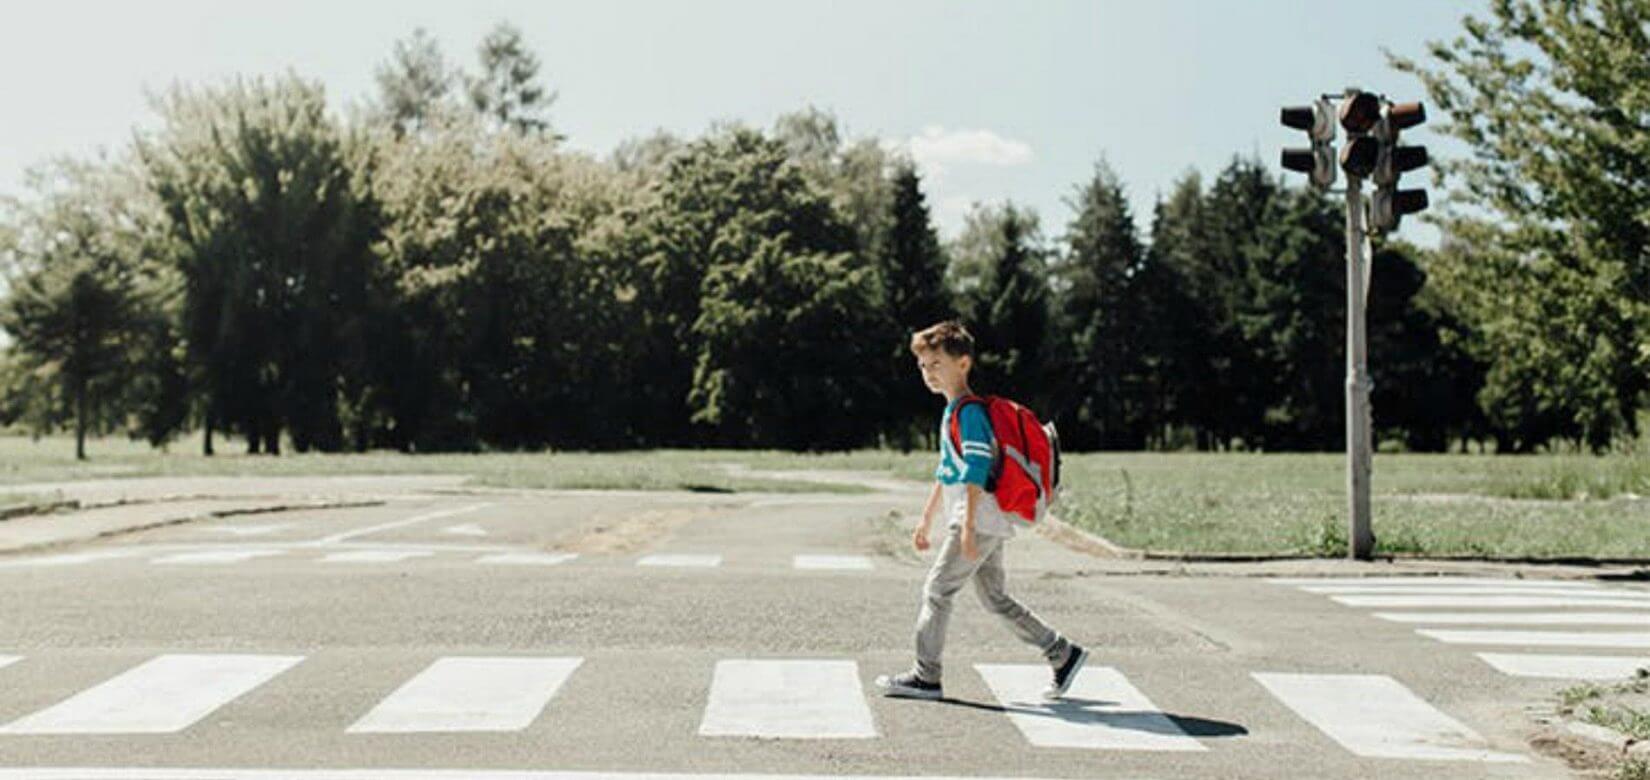 Έρευνα: Πότε είναι ένα παιδί έτοιμο να διασχίζει μόνο του το δρόμο;